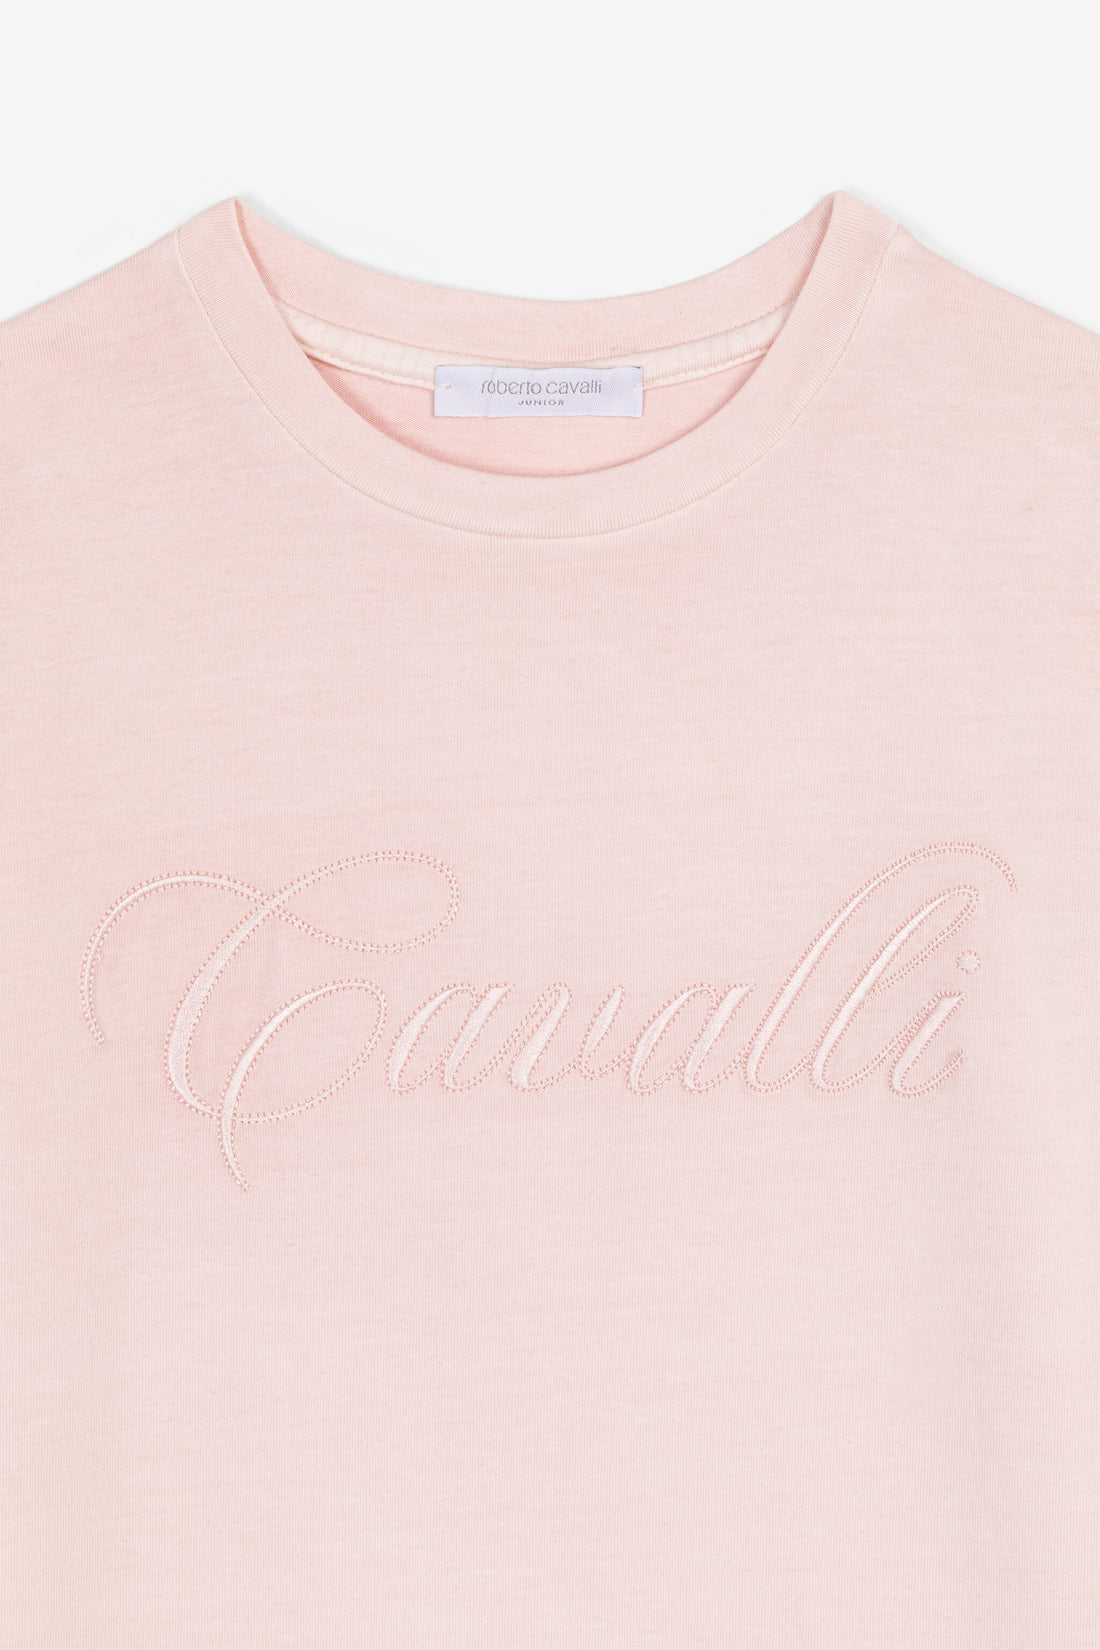 Roberto Cavalli Girl T Shirt